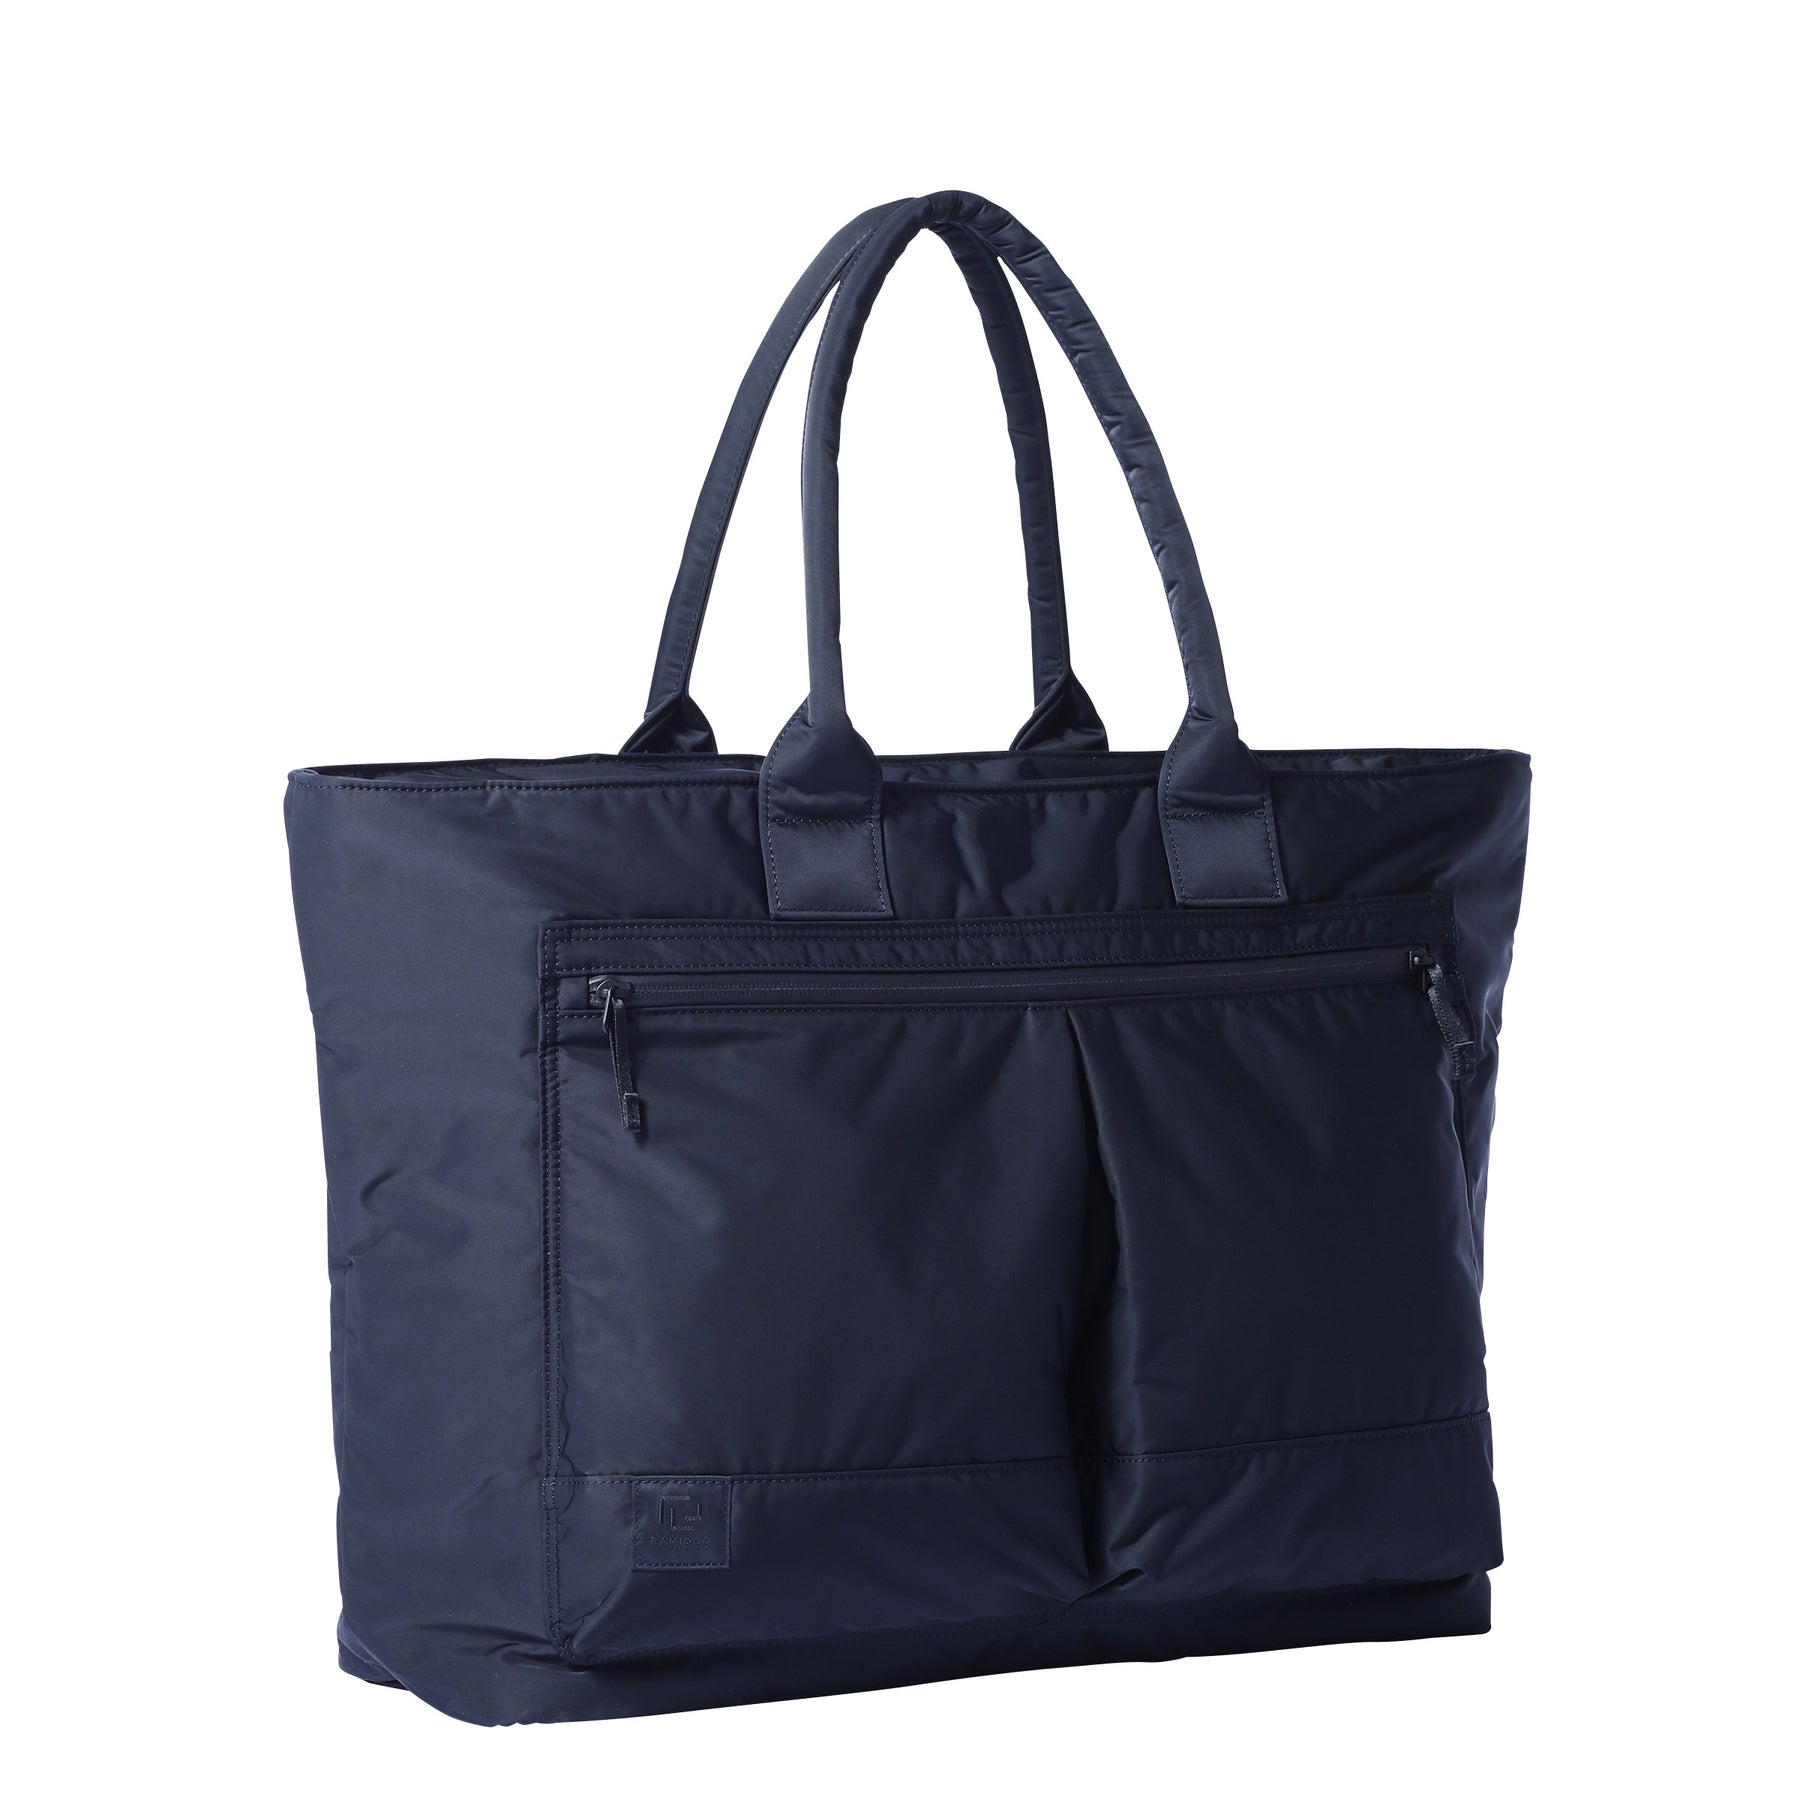 メンズ新品 ramidus mirage tote bag (L) navy - トートバッグ